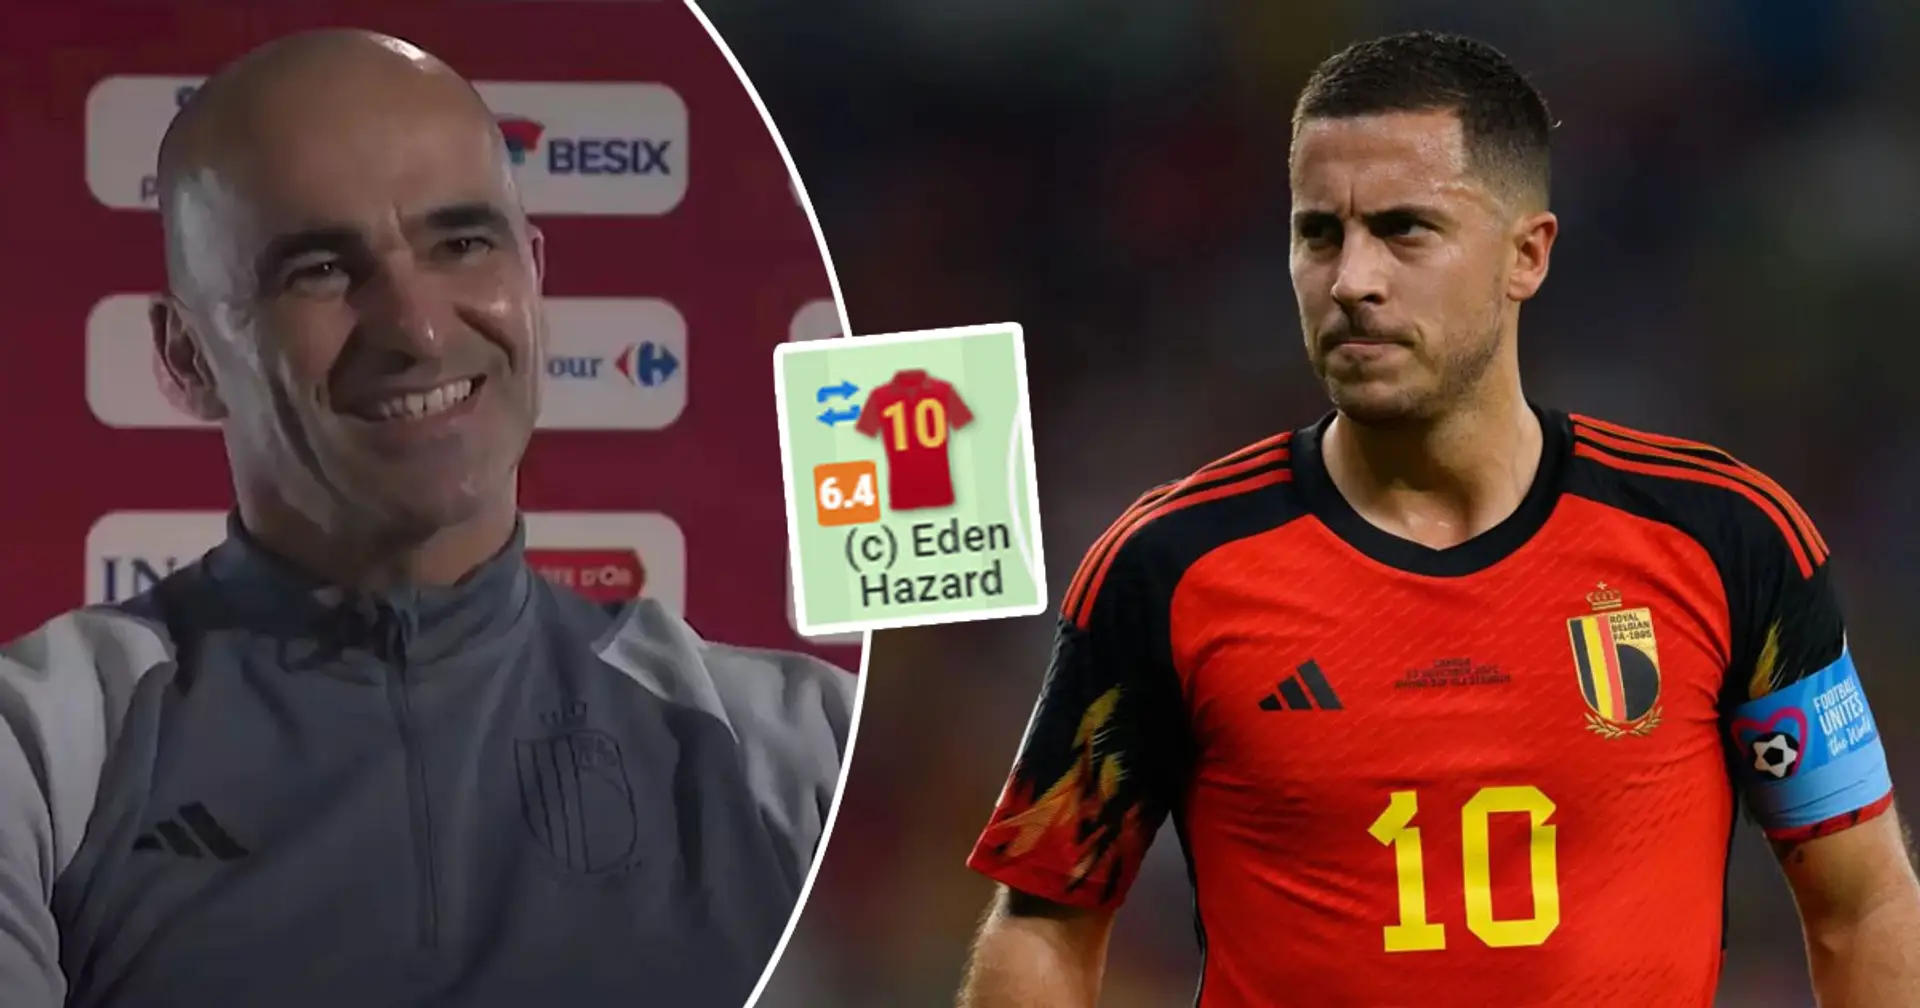 L'entraîneur belge fait l'éloge d'Hazard pour son "grand" match contre le Maroc - les statistiques suggèrent qu'il n'avait rien fait de spécial